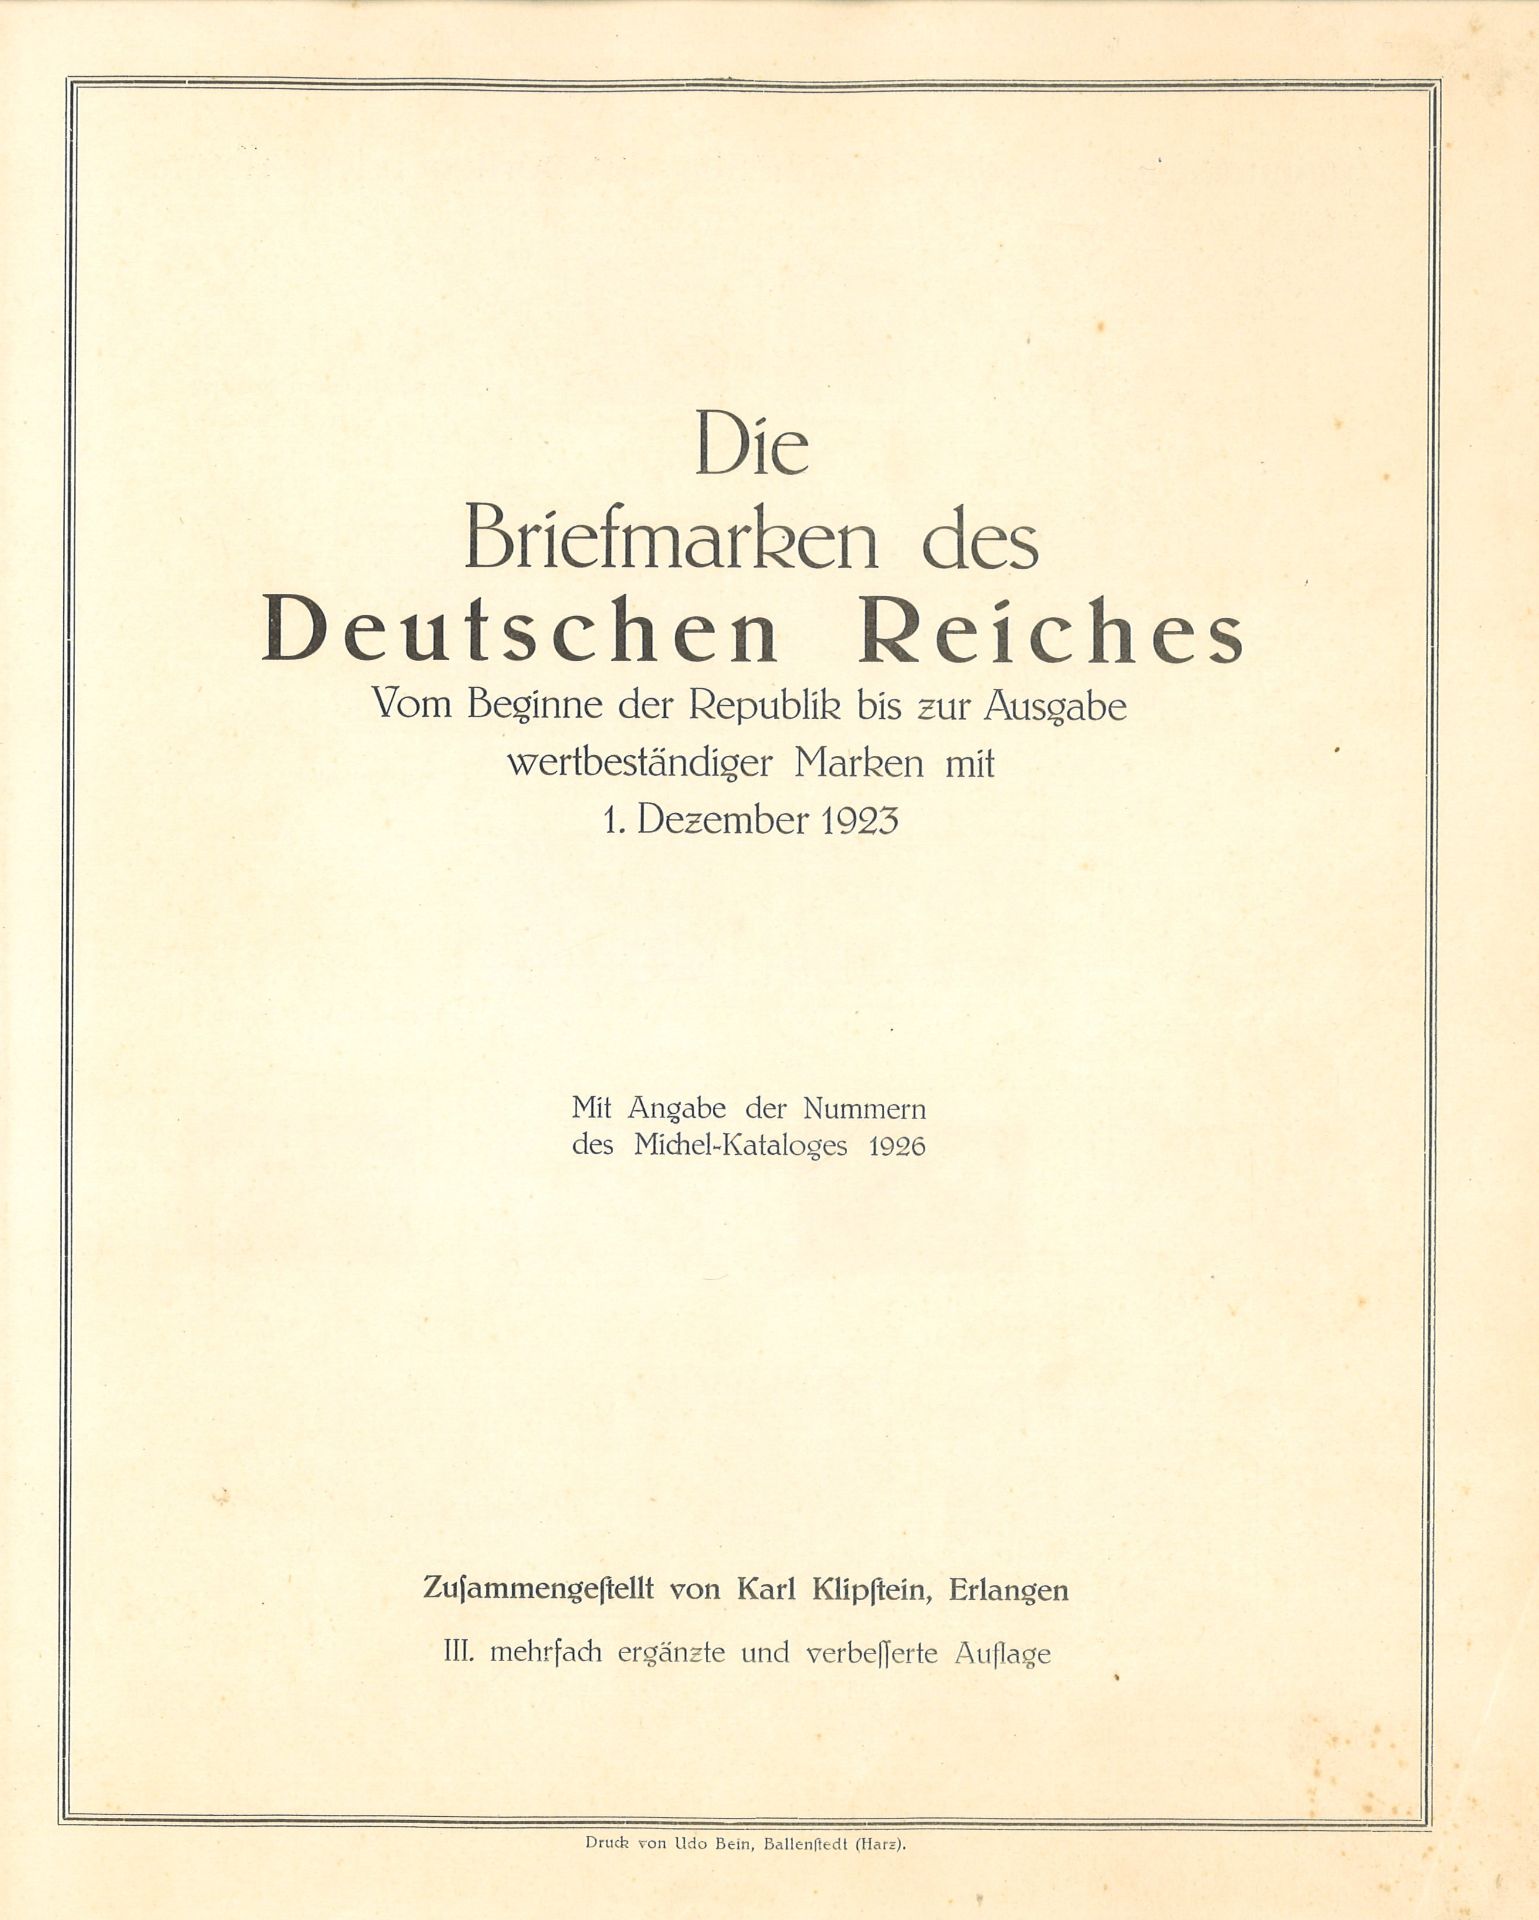 Die Briefmarken des Deutschen Reiches von der Republik bis zur Rentenmark. Schönes Album, komplett - Image 2 of 4